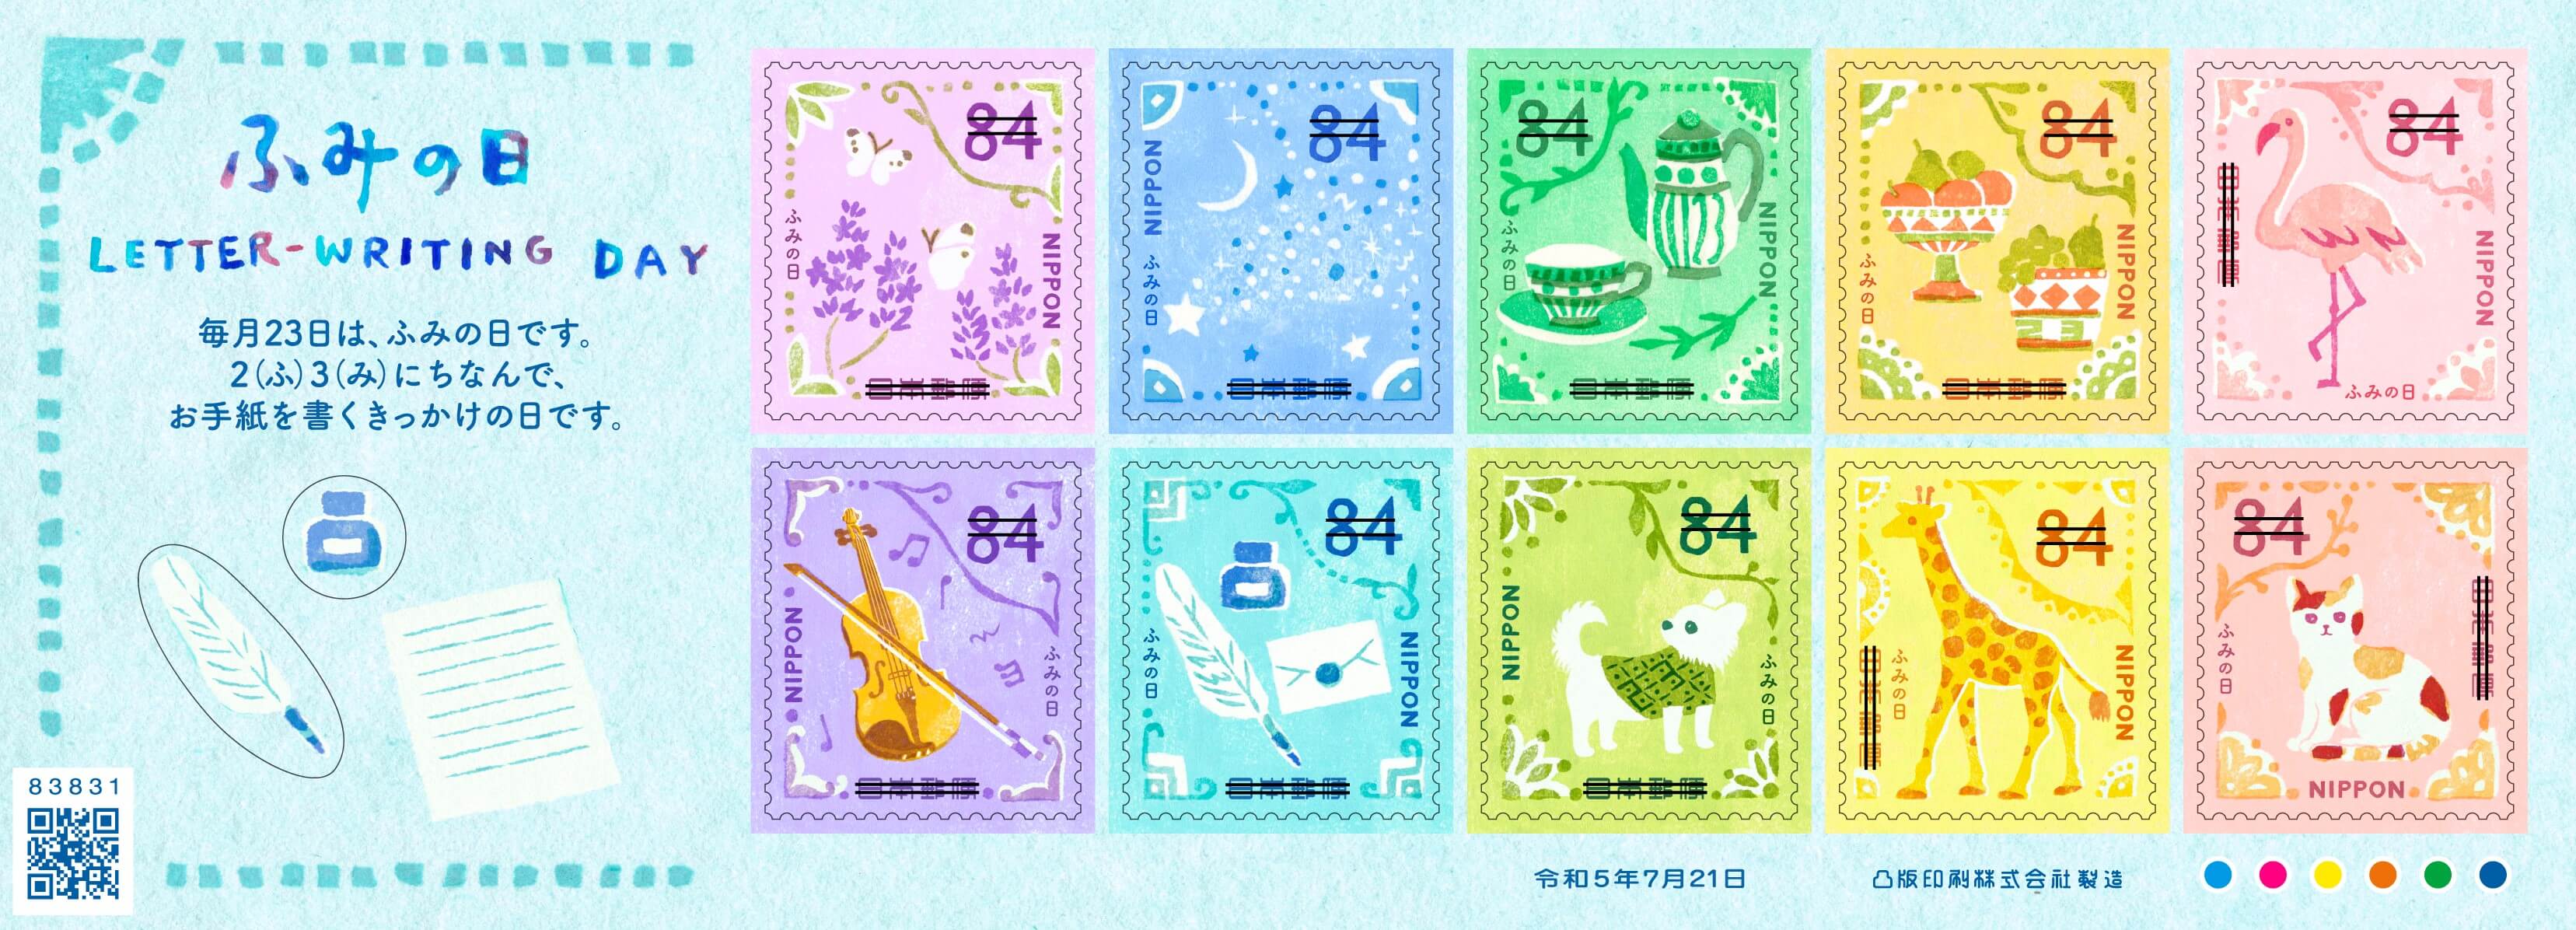 ふみの日にちなむ郵便切手 日本郵便株式会社